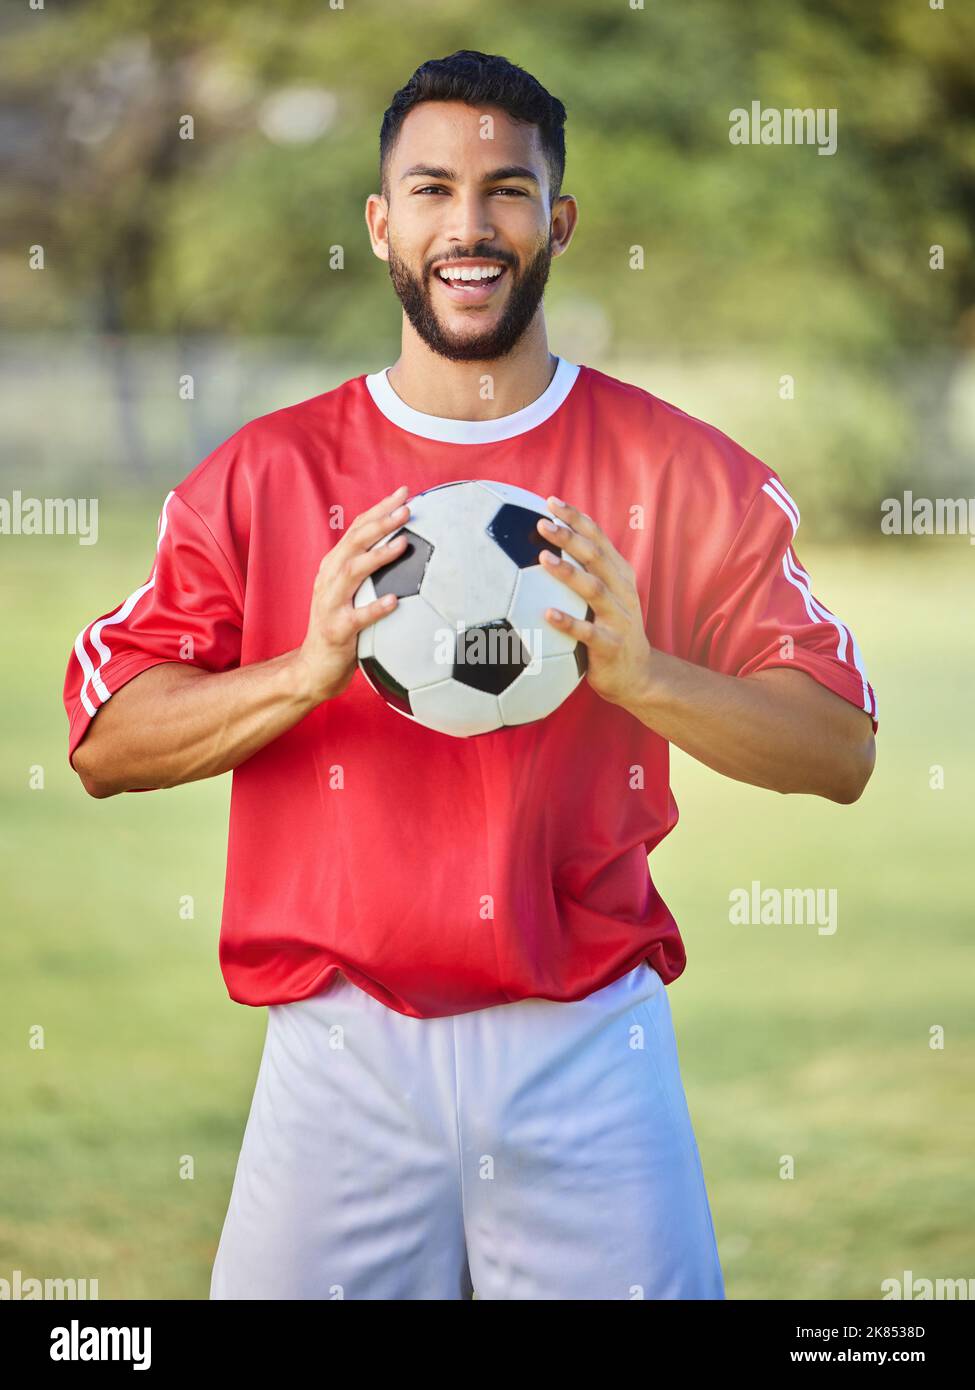 Fußball, Sport und Mann auf einem Feld für ein Spiel, Training oder Wettbewerb. Porträt eines jungen, glücklichen und begeisterten Athleten mit einem Fußball während einer Stockfoto